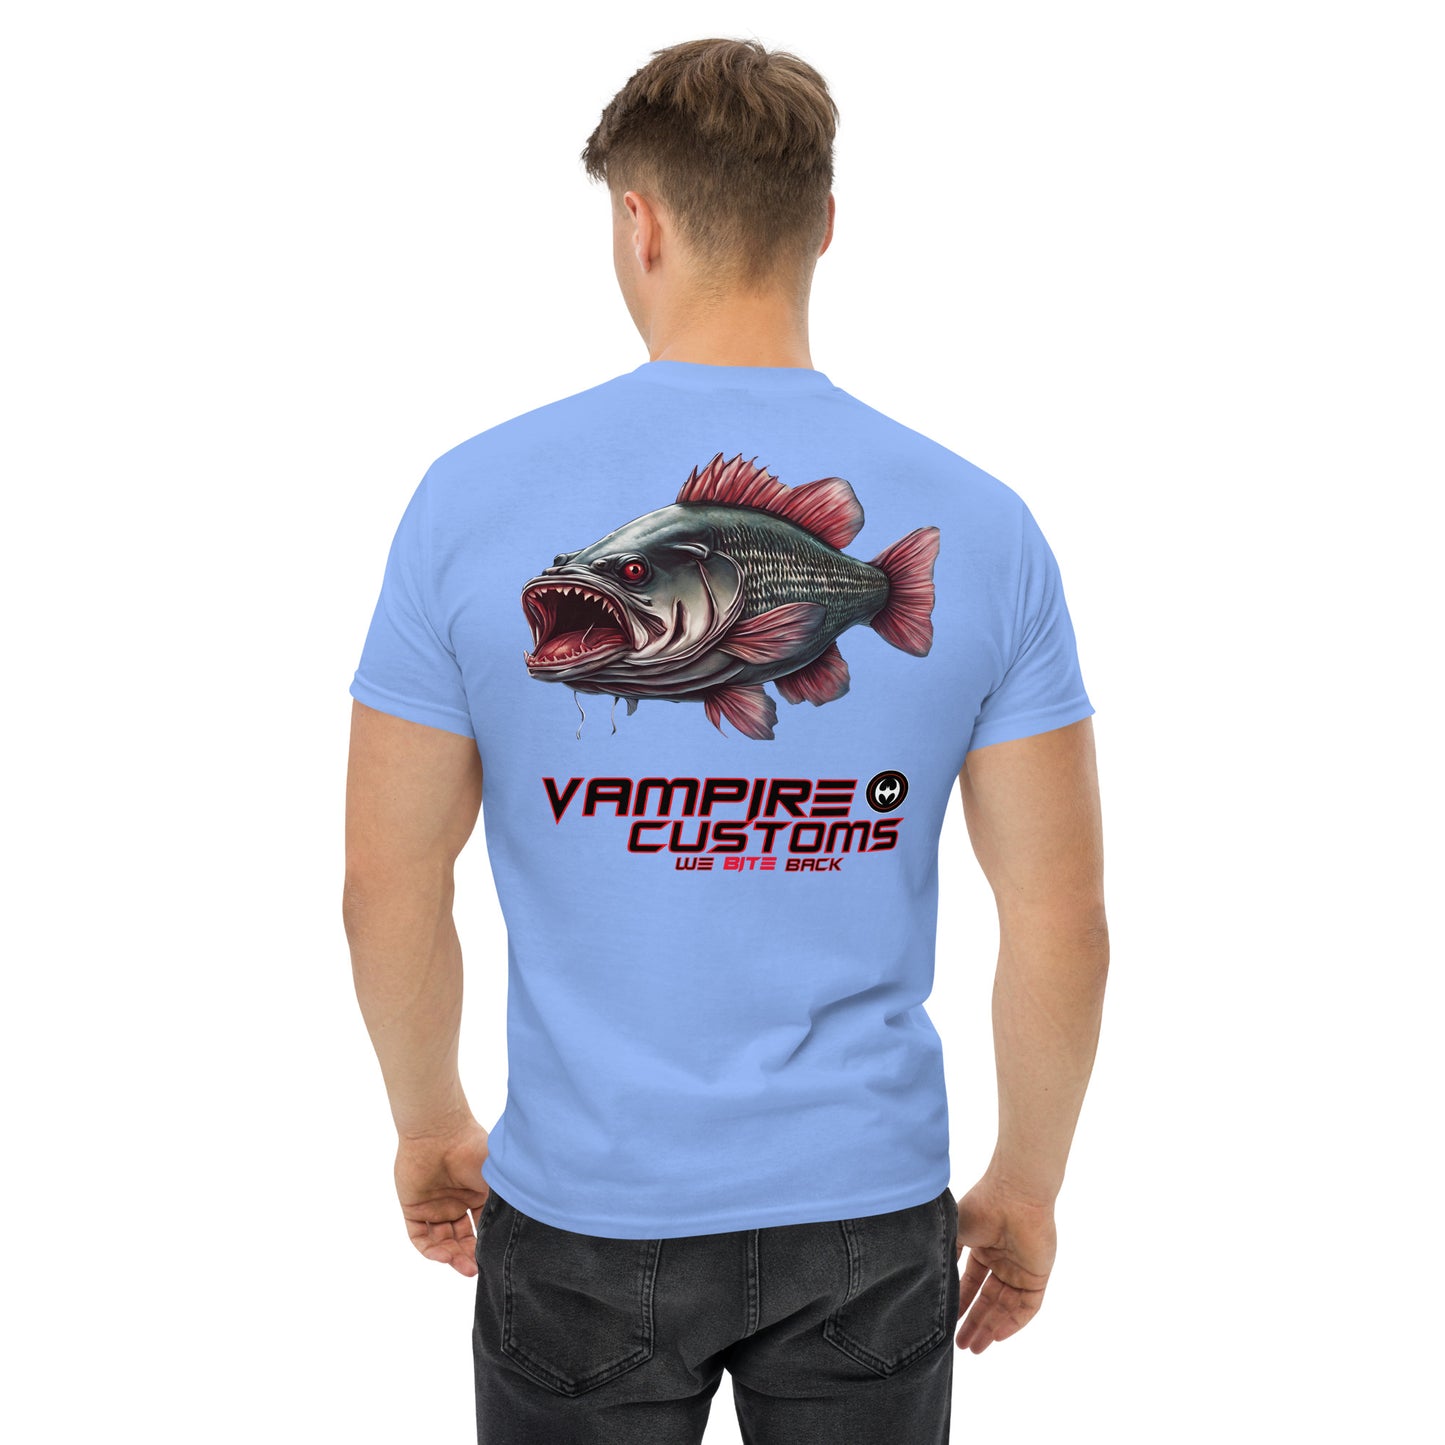 Vampire Customs Classic Tee Shirt Vampire Fish